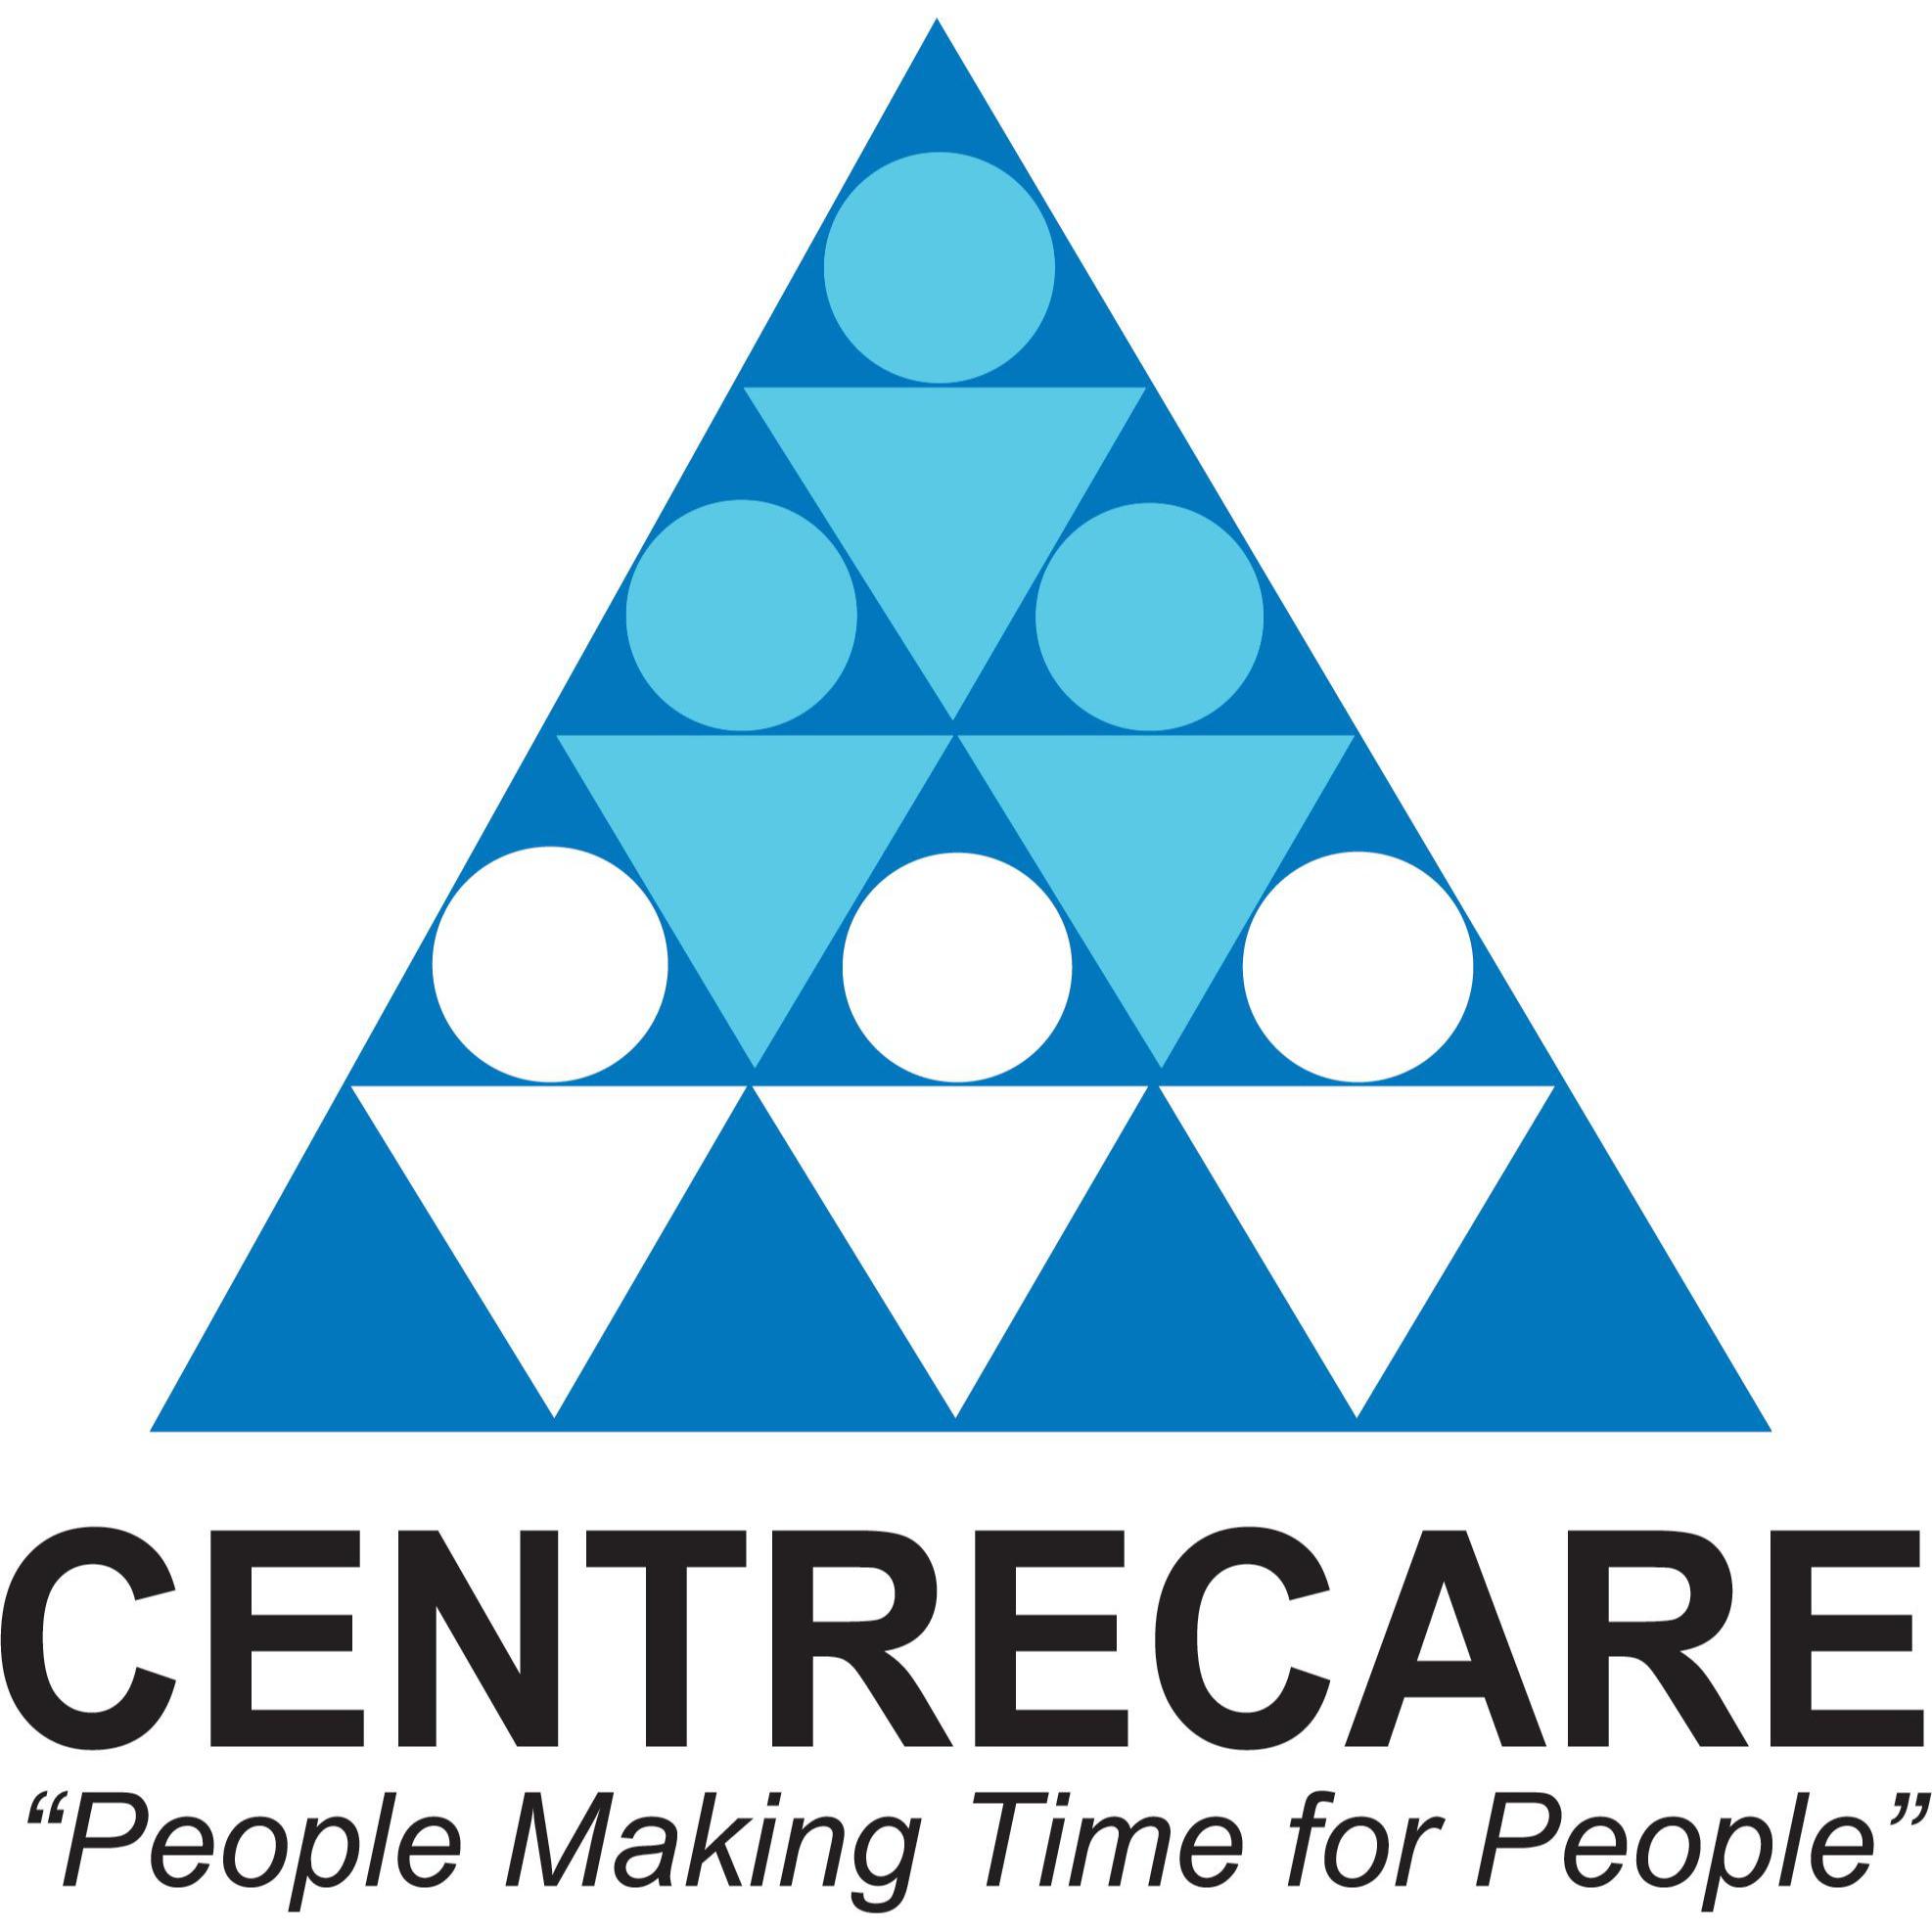 Centrecare - Cannington, WA 6107 - (08) 9451 1100 | ShowMeLocal.com